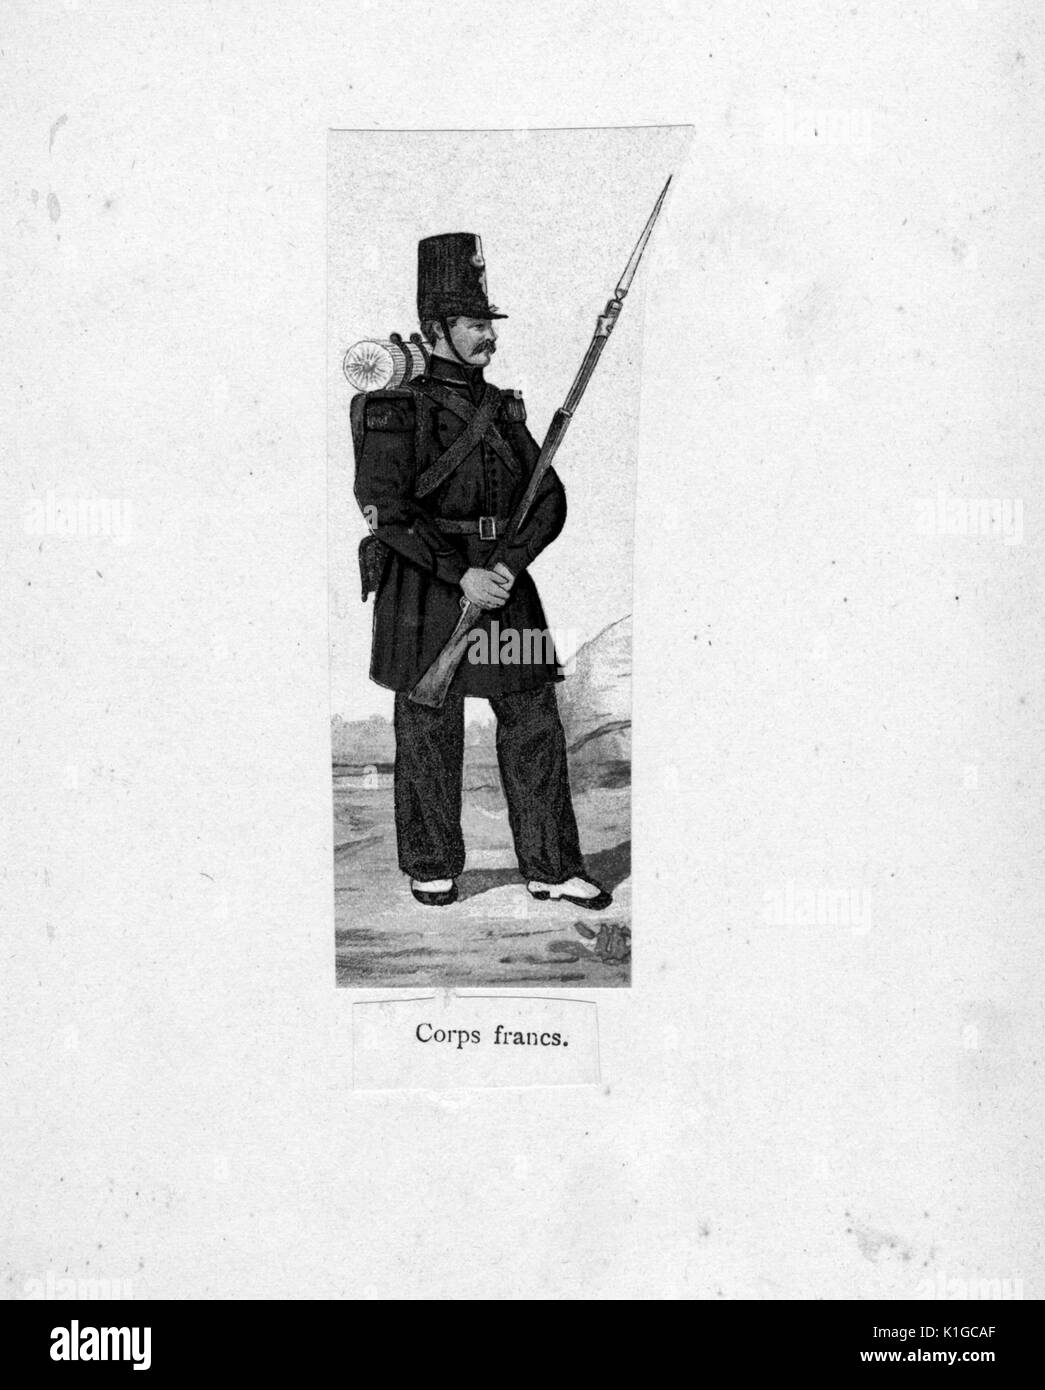 Lithographie couleur montrant un soldat français en uniforme, tenant une baïonnette, intitulé Corps francs, 1900. À partir de la Bibliothèque publique de New York. Banque D'Images